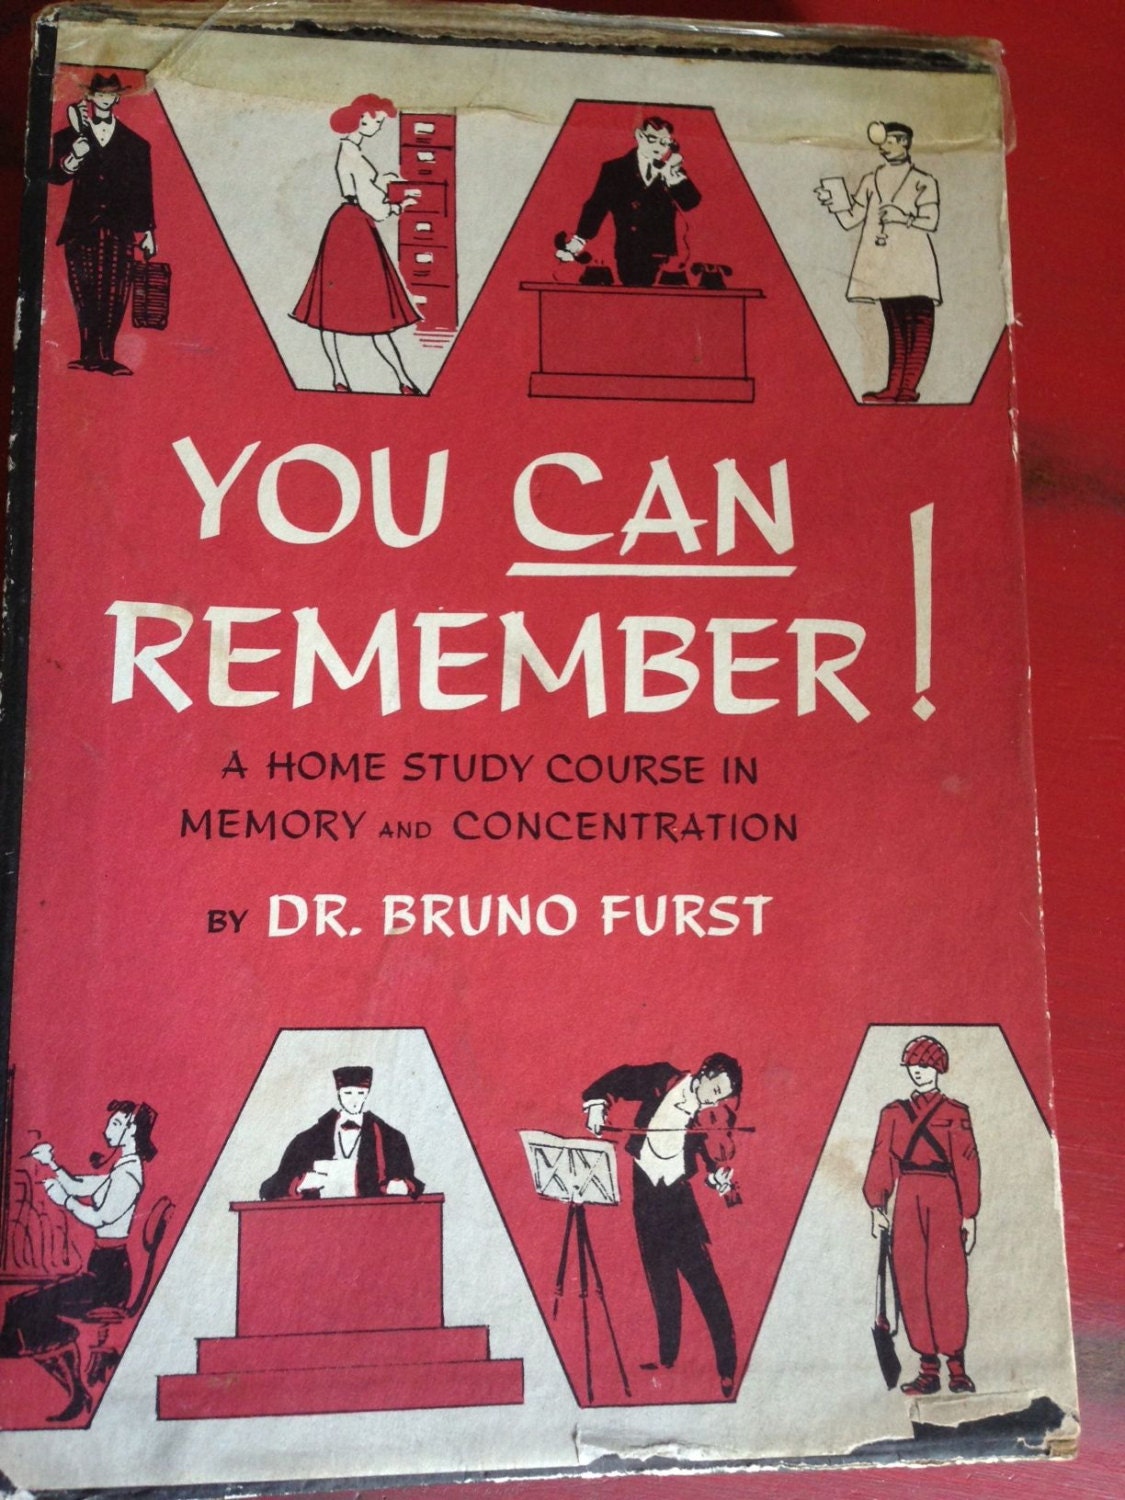 bruno furst memory course pdf